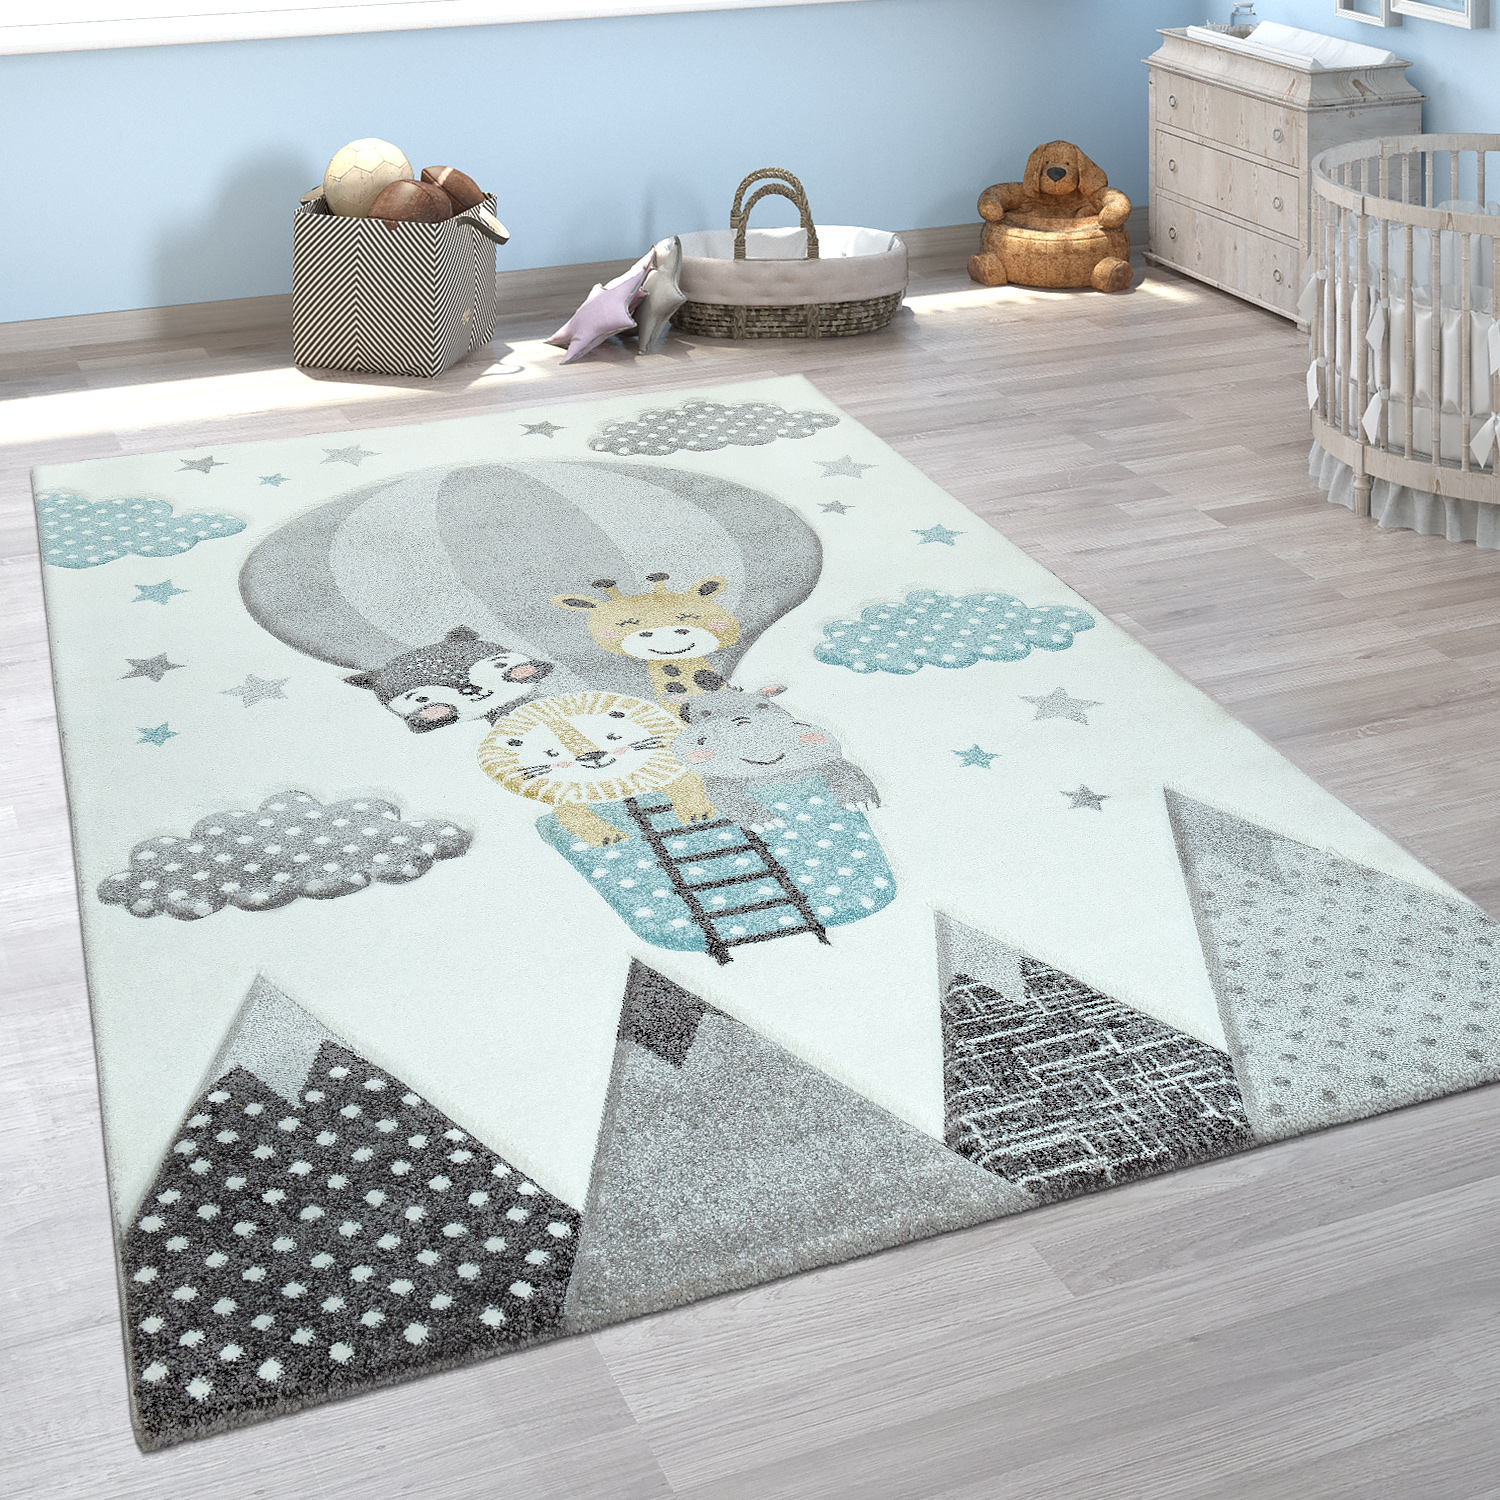 Grösse:133 cm Quadrat Paco Home Kinderteppich Teppich Kinderzimmer Kurzflor Mädchen Jungs Sterne Tier Muster Creme Grau 